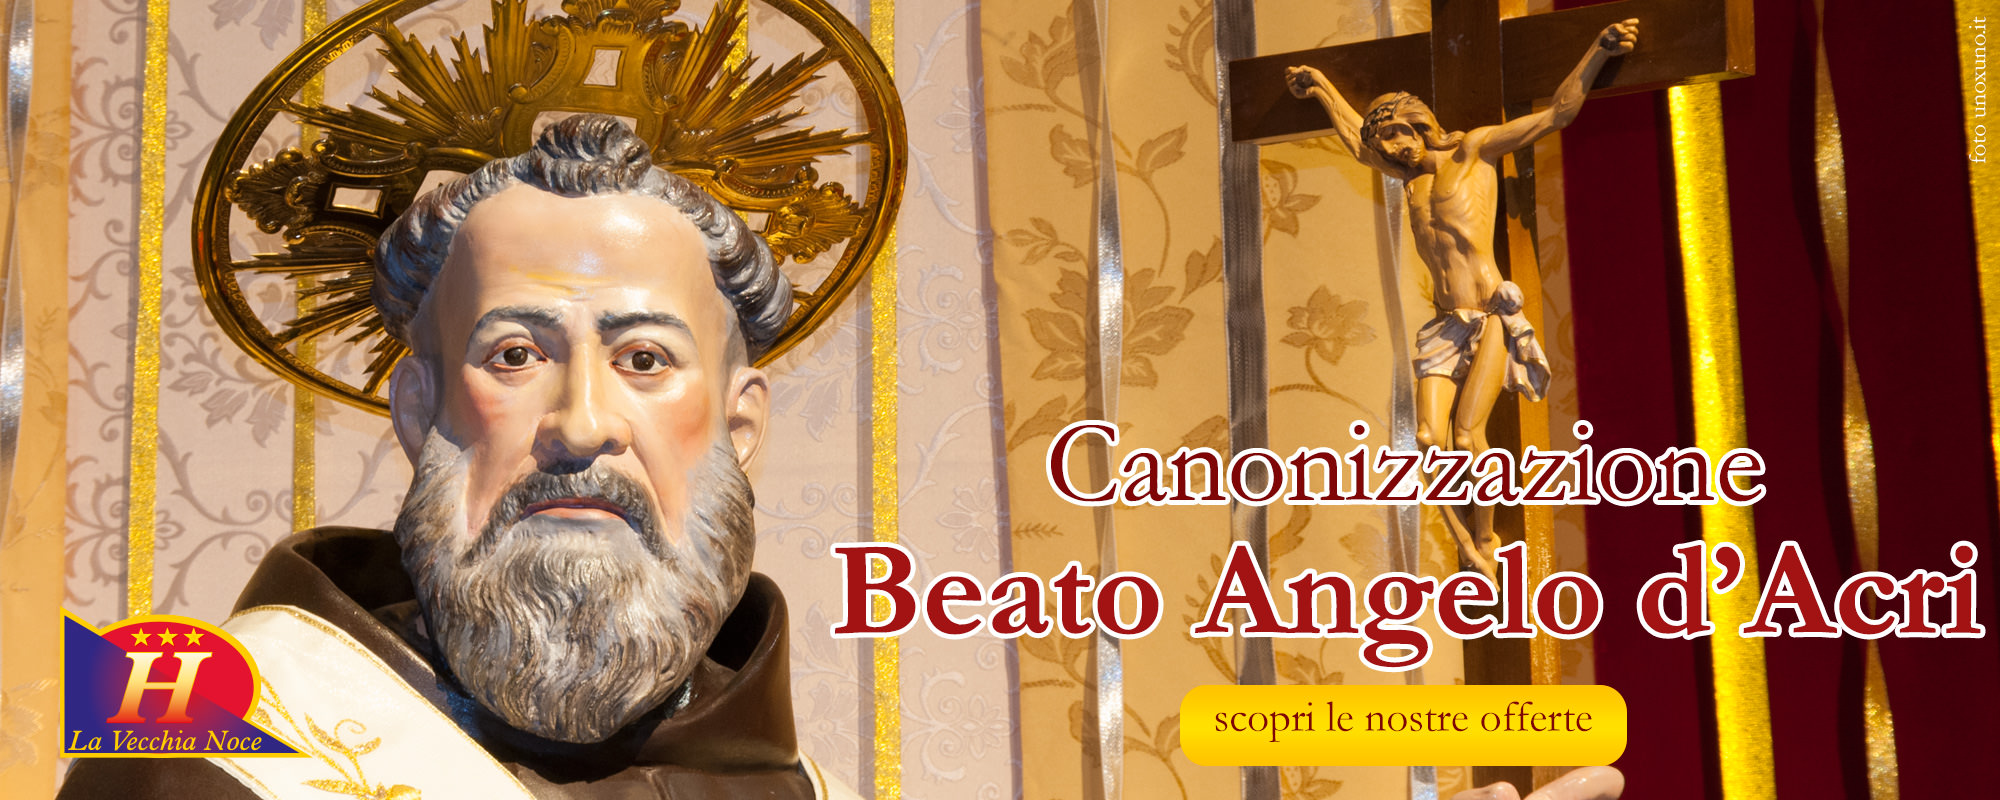 Speciale Canonizzazione Beato Angelo d'Acri